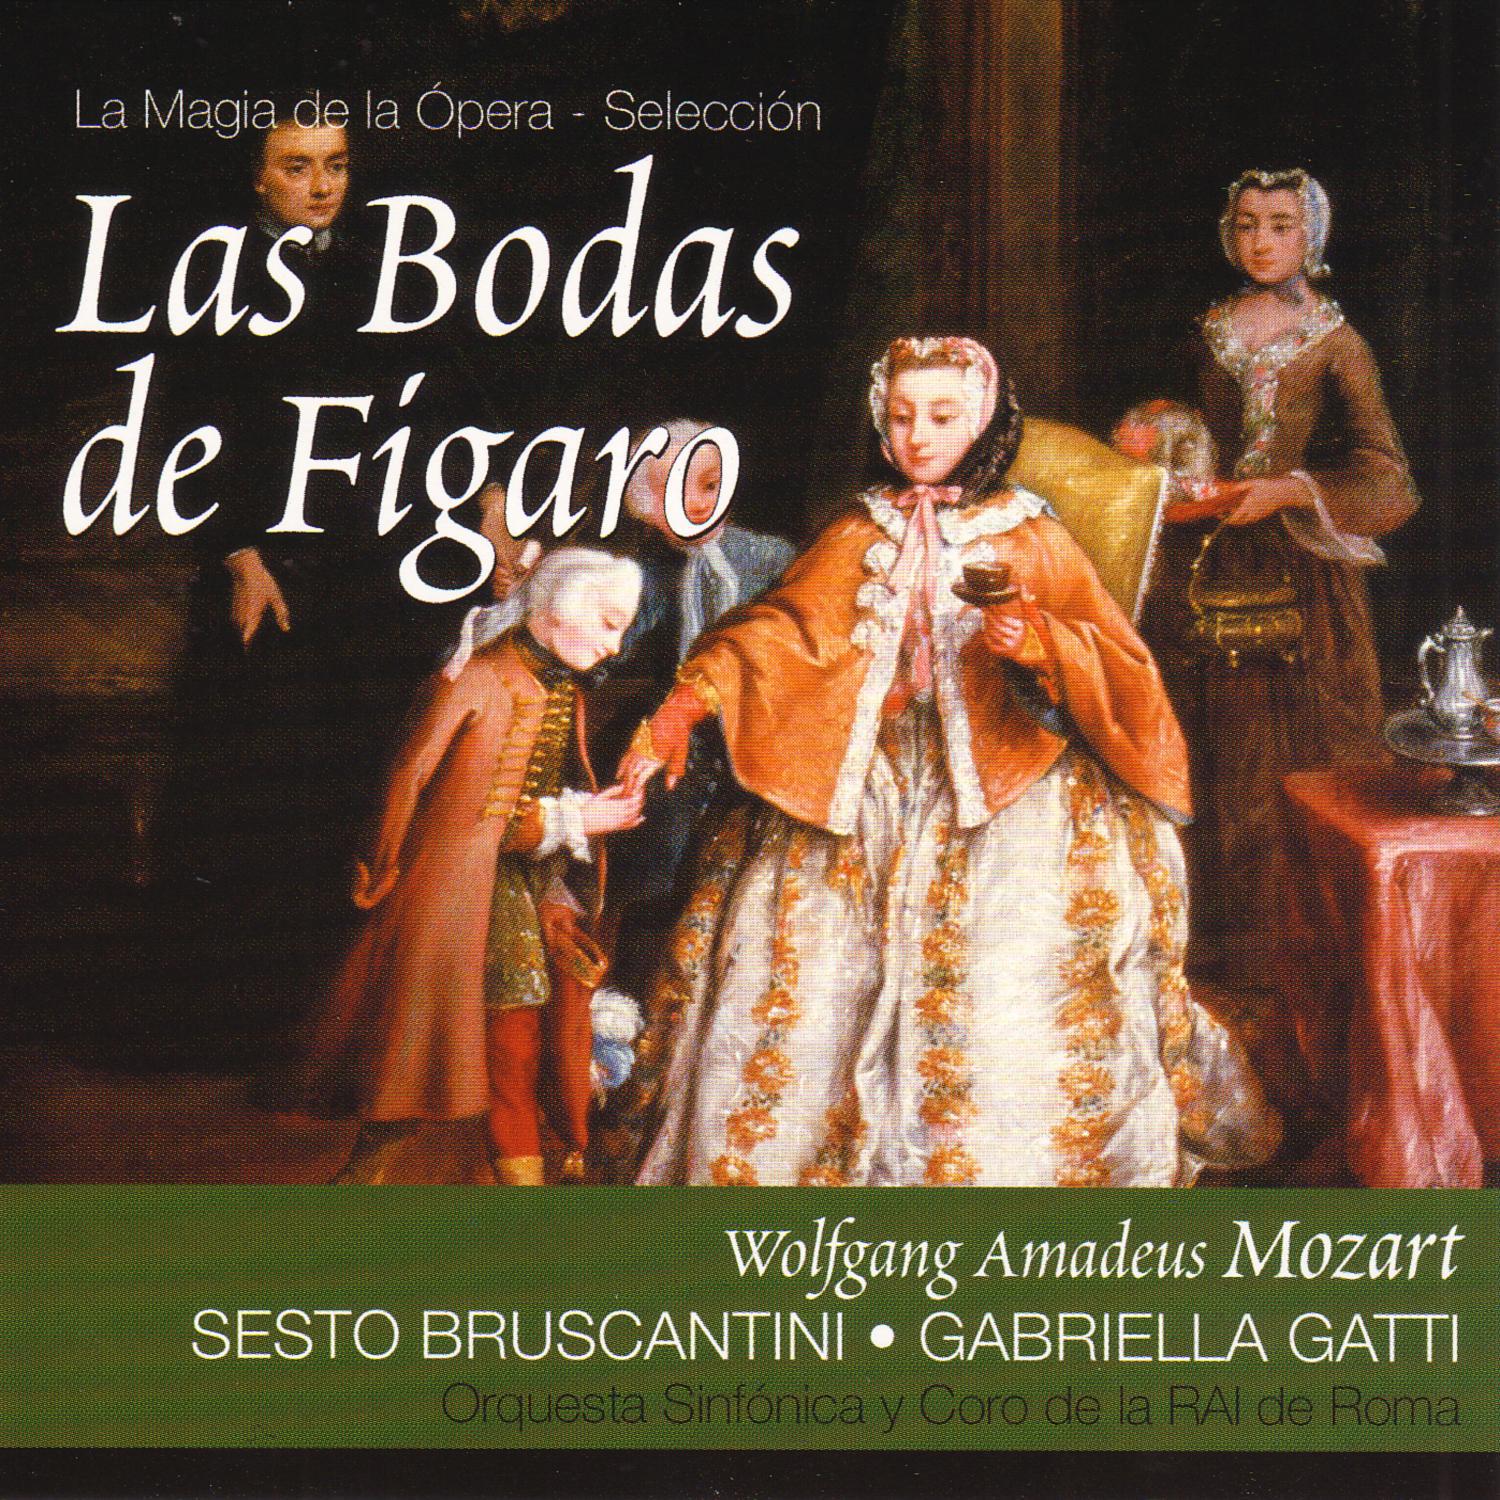 Las Bodas de Fígaro: Acto I. Aria - "Non più andrai, farfallone amoroso"